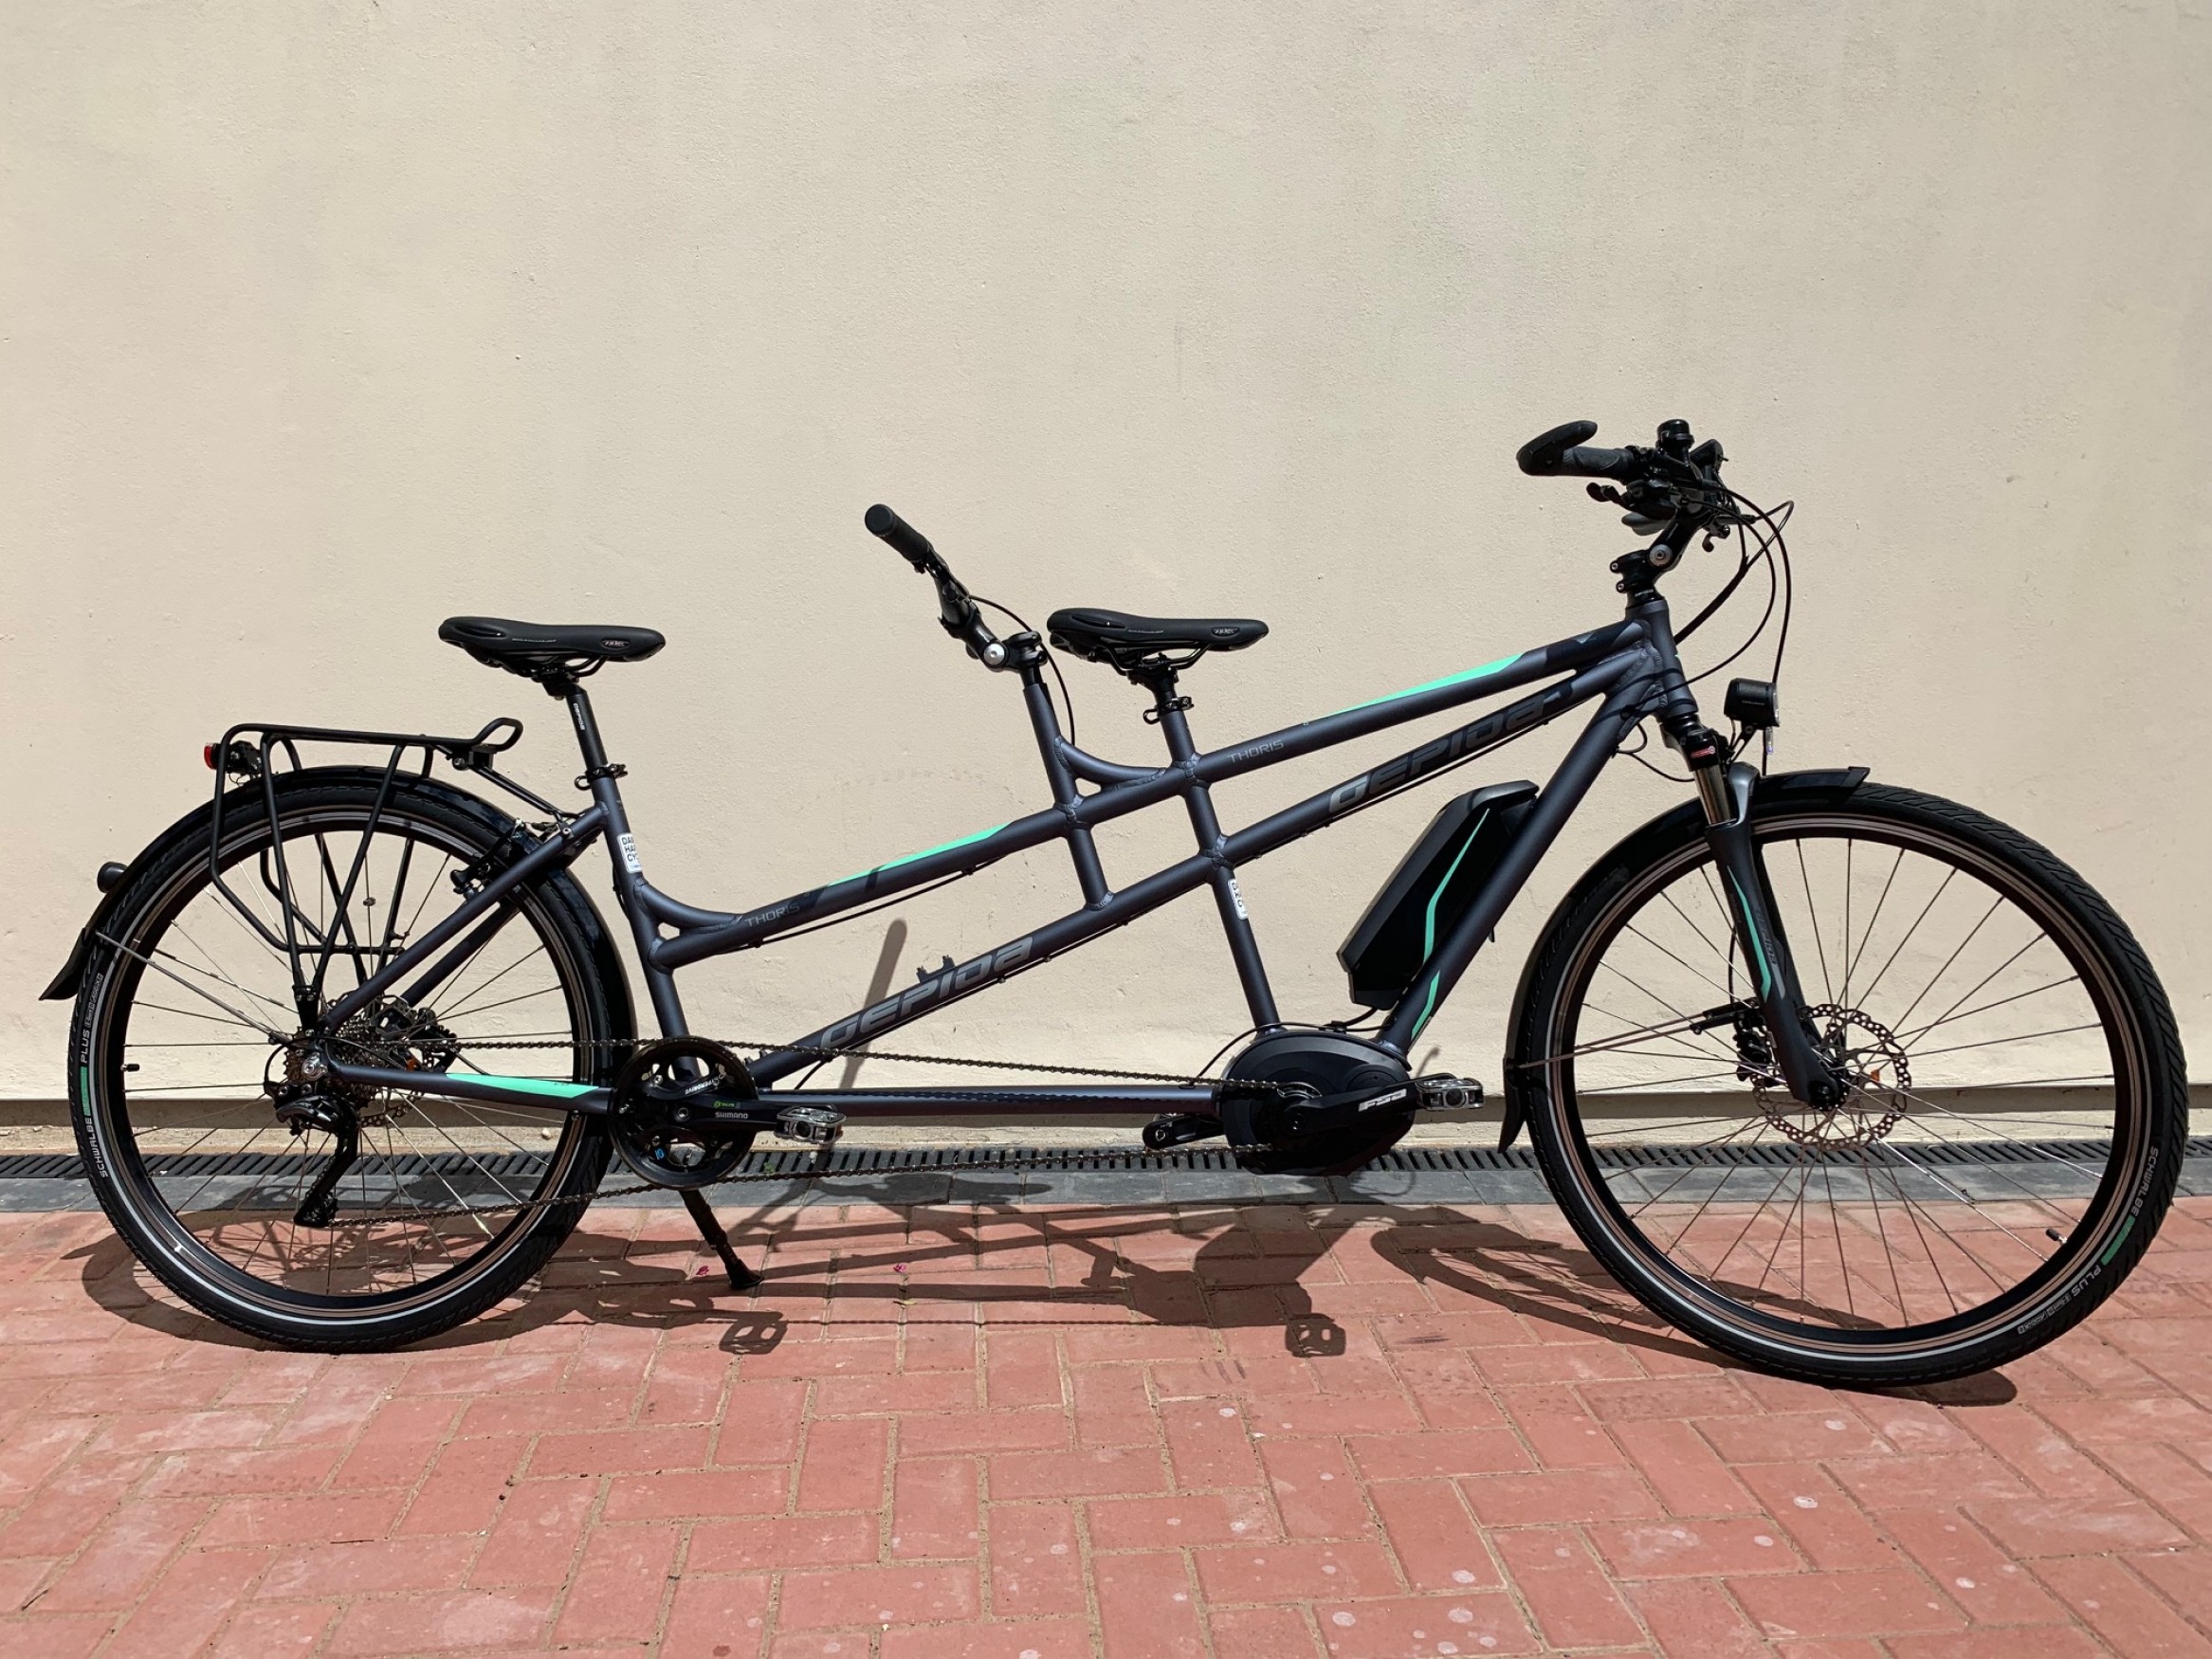 gepida thoris 1000 electric tandem bike